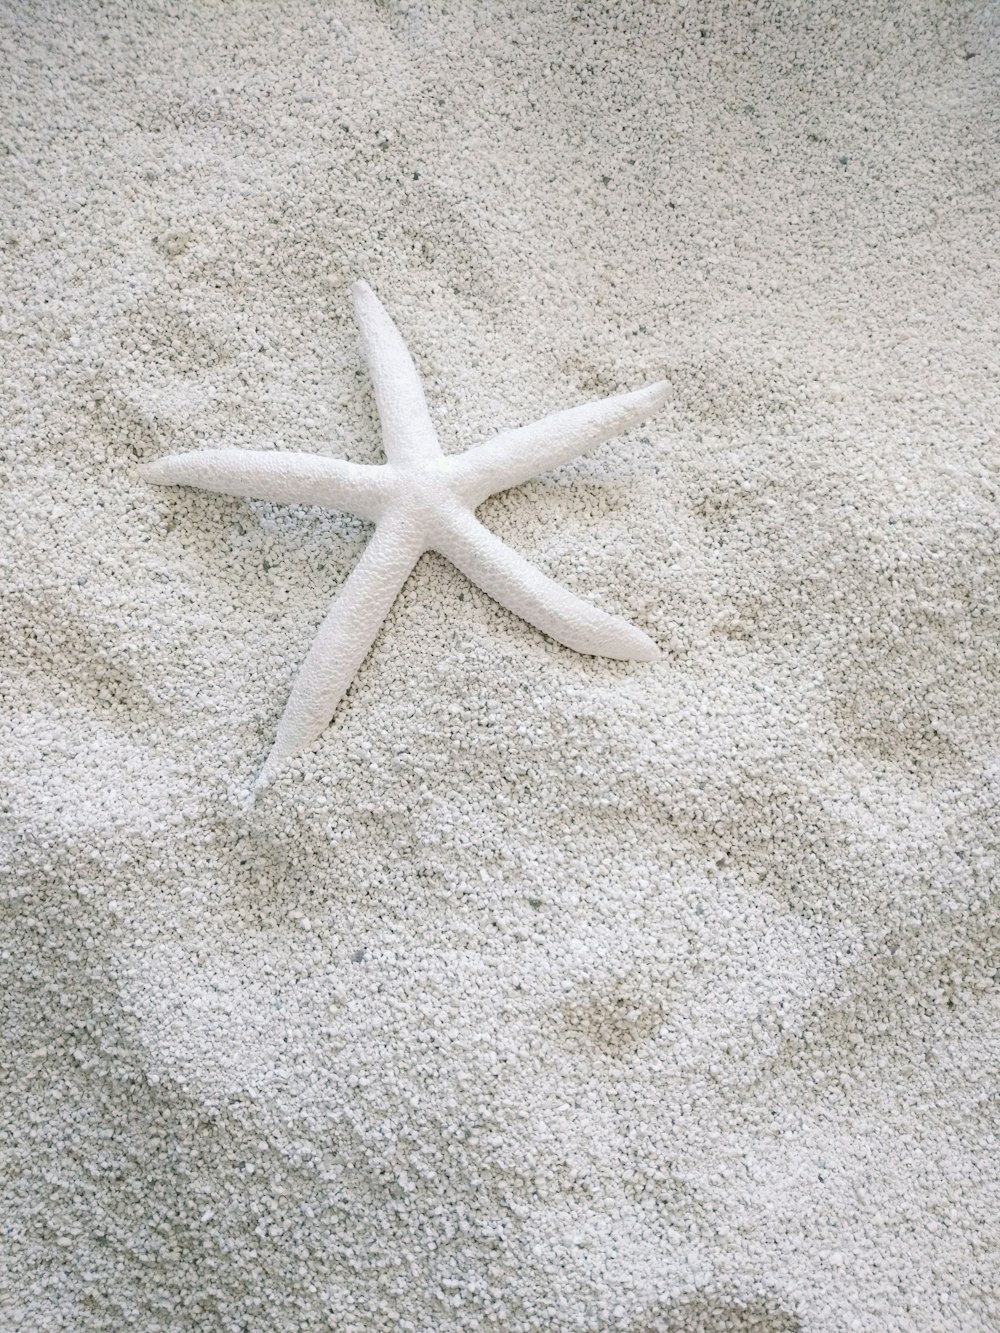 하얀 모래에 흰 불가사리